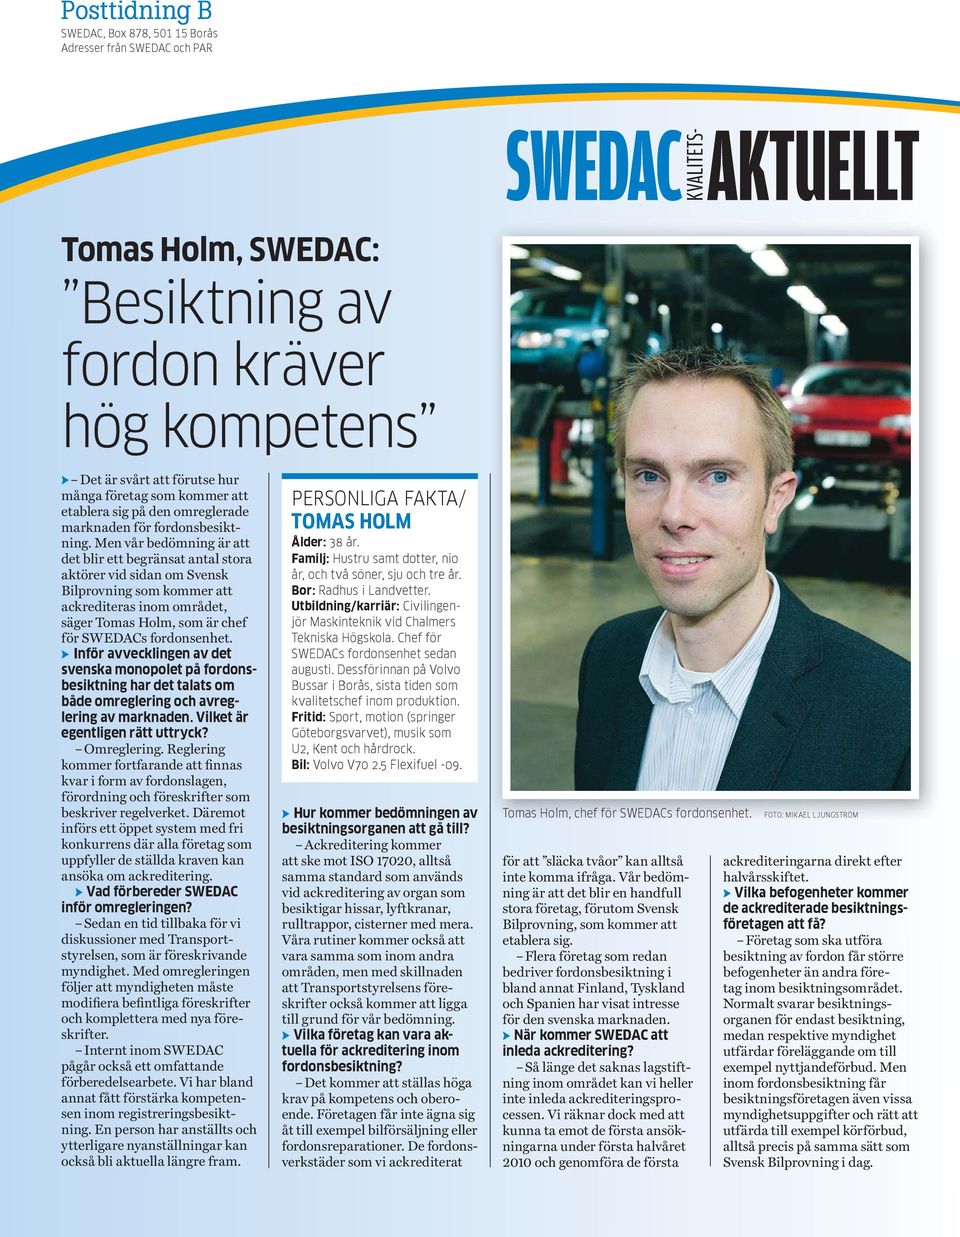 Men vår bedömning är att det blir ett begränsat antal stora aktörer vid sidan om Svensk Bilprovning som kommer att ackrediteras inom området, säger Tomas Holm, som är chef för SWEDACs fordonsenhet.